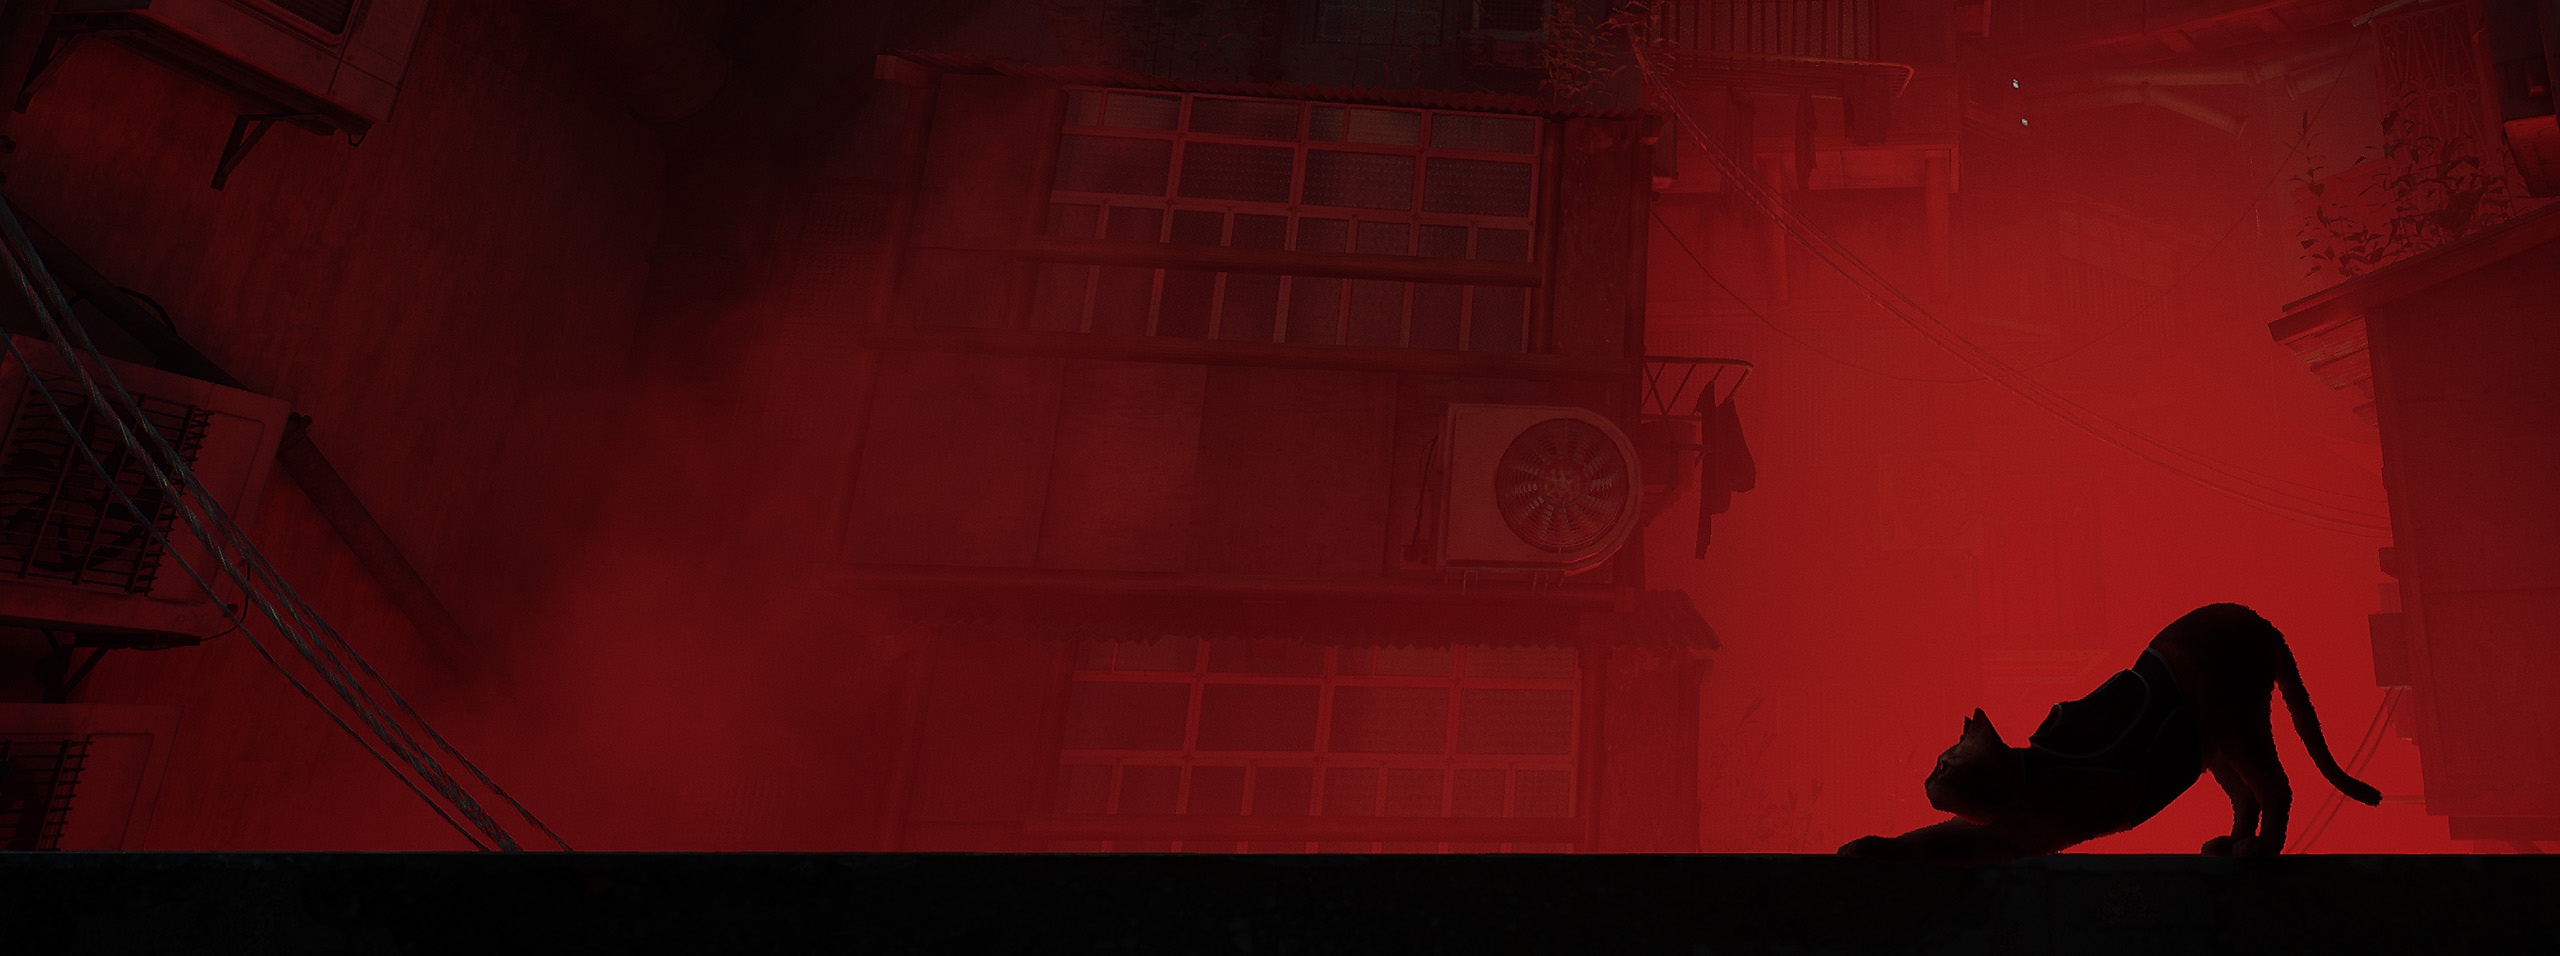 Alternatív fő grafika a Stray játékról, egy macska sziluettjével a vörös városi látkép előtt